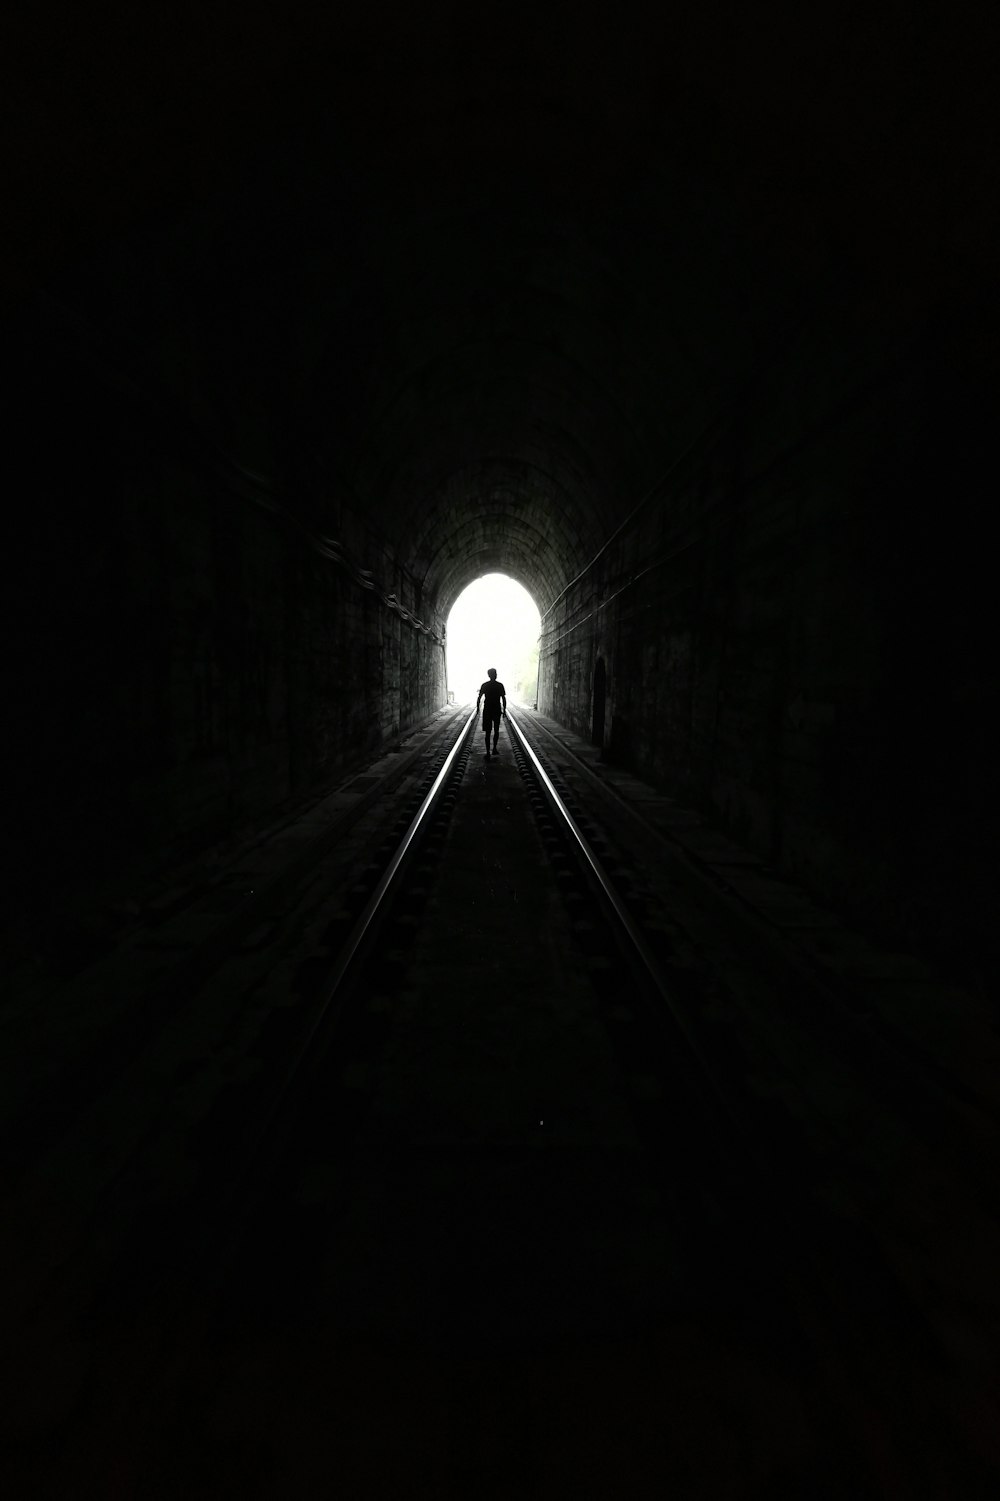 빛이 있는 터널의 그레이스케일 사진